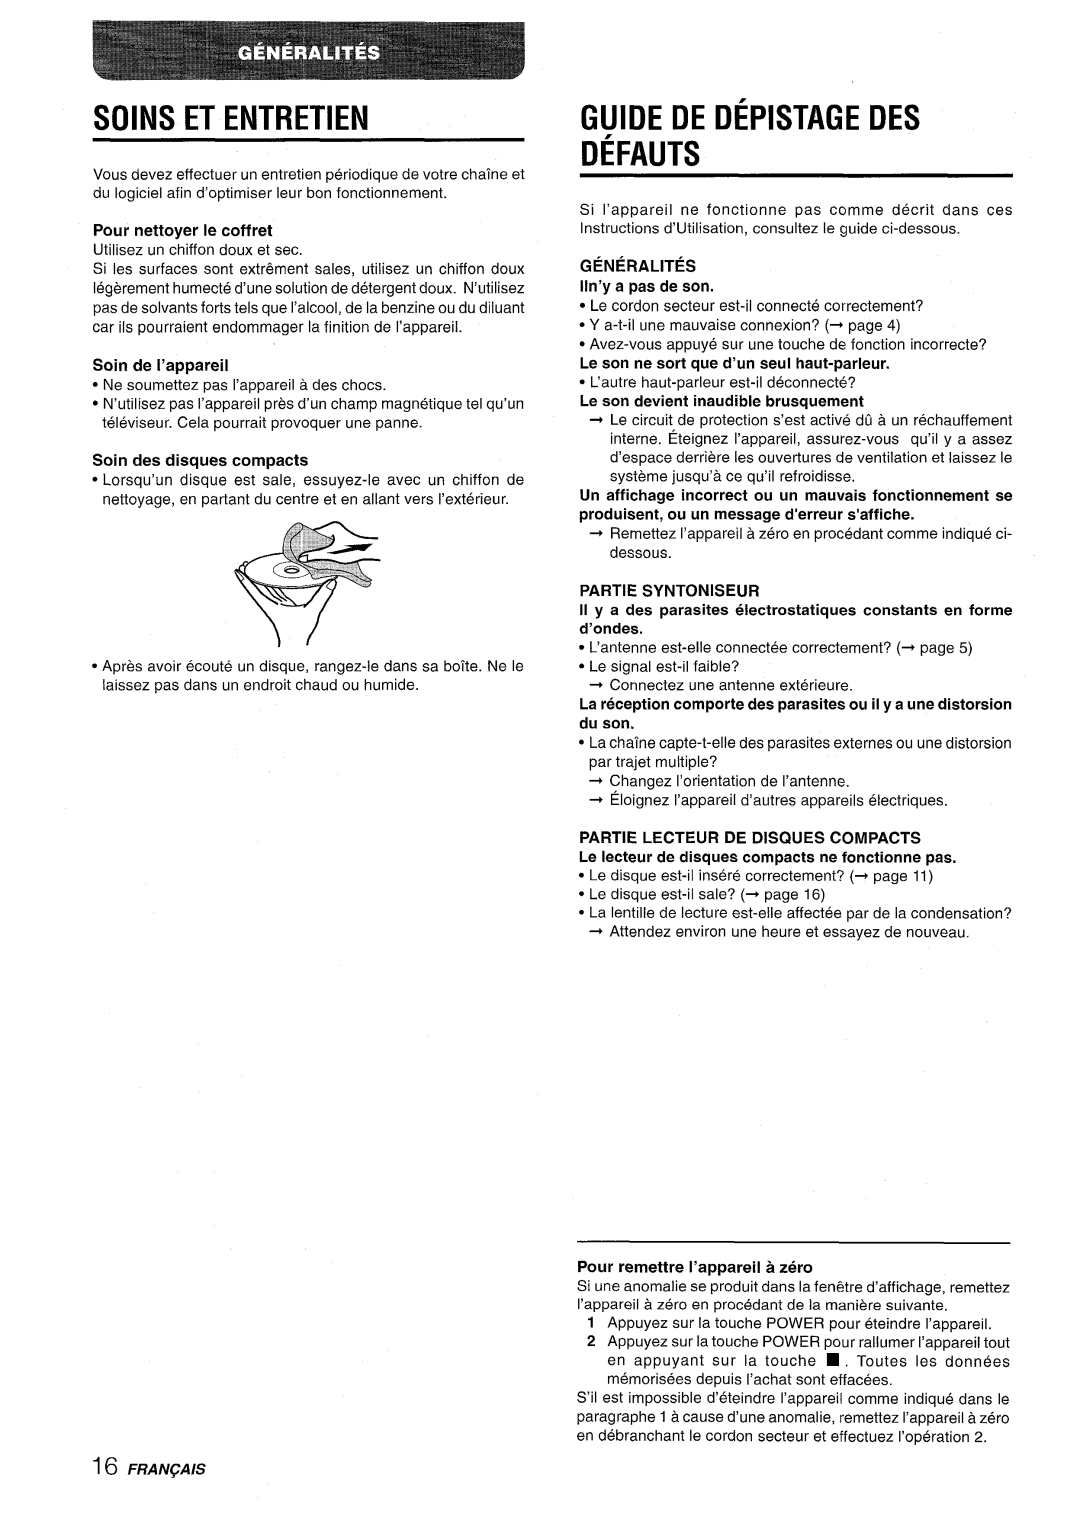 Aiwa XR-M70 manual Soins Et Entretien, Guide De Depistage Des Defauts, Pour nettoyer Ie coffret, Soin de I’appareil 